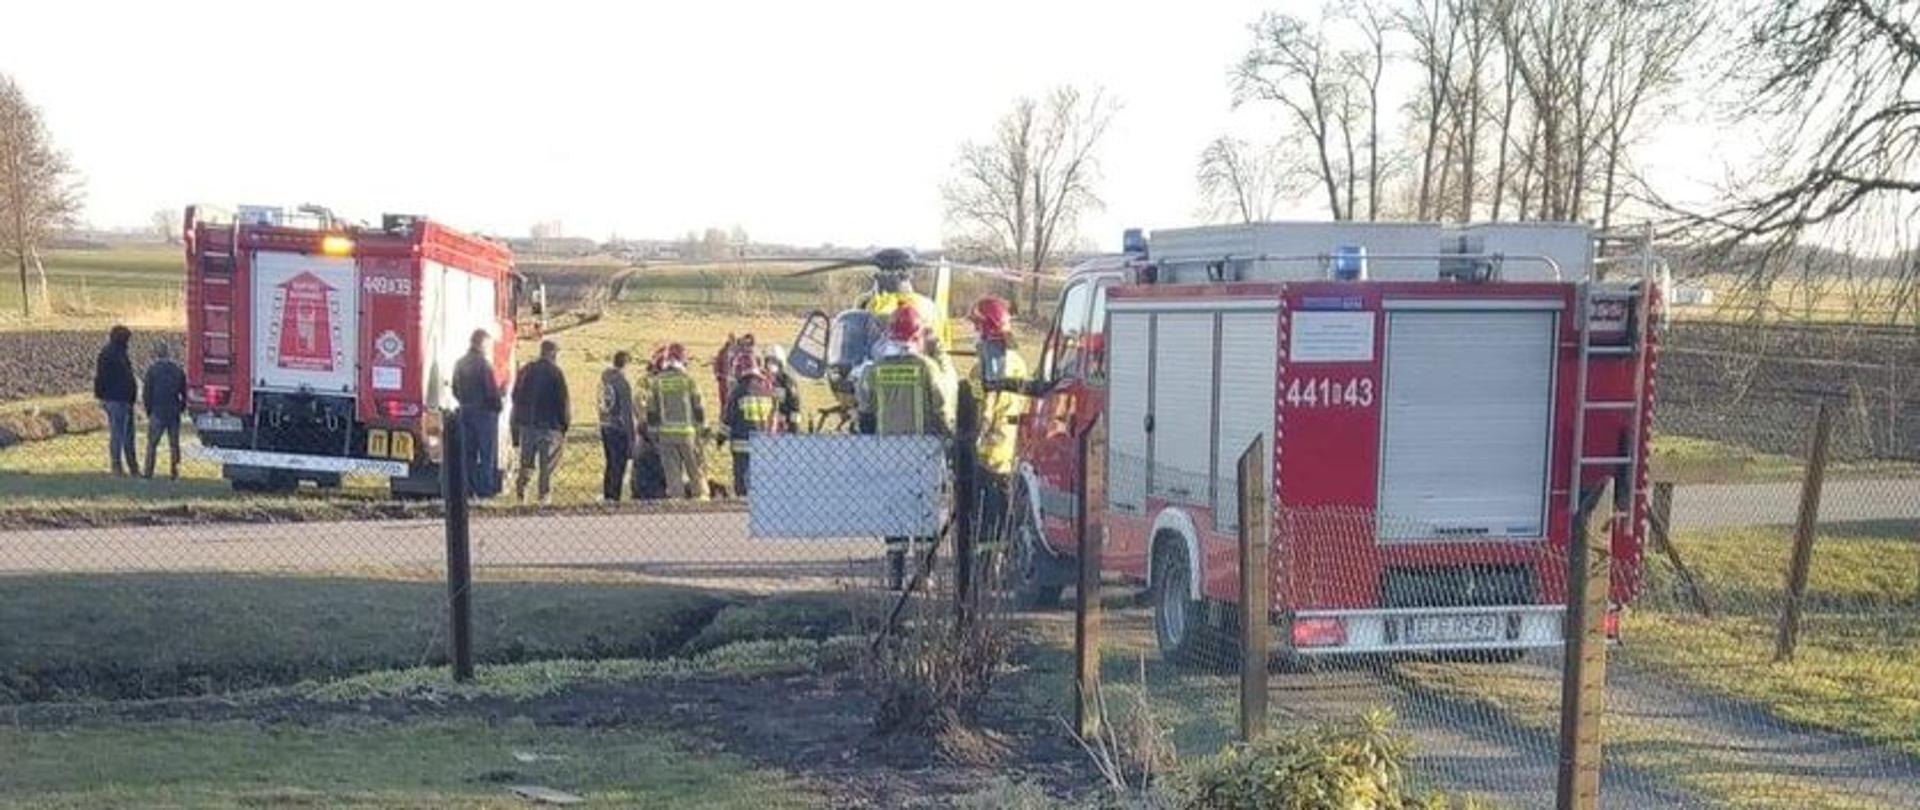 Na zdjęciu widać samochody strażackie, strażaków, śmigłowiec Lotniczego Pogotowia Ratunkowego oraz osoby postronne obserwujące działania ratownicze.